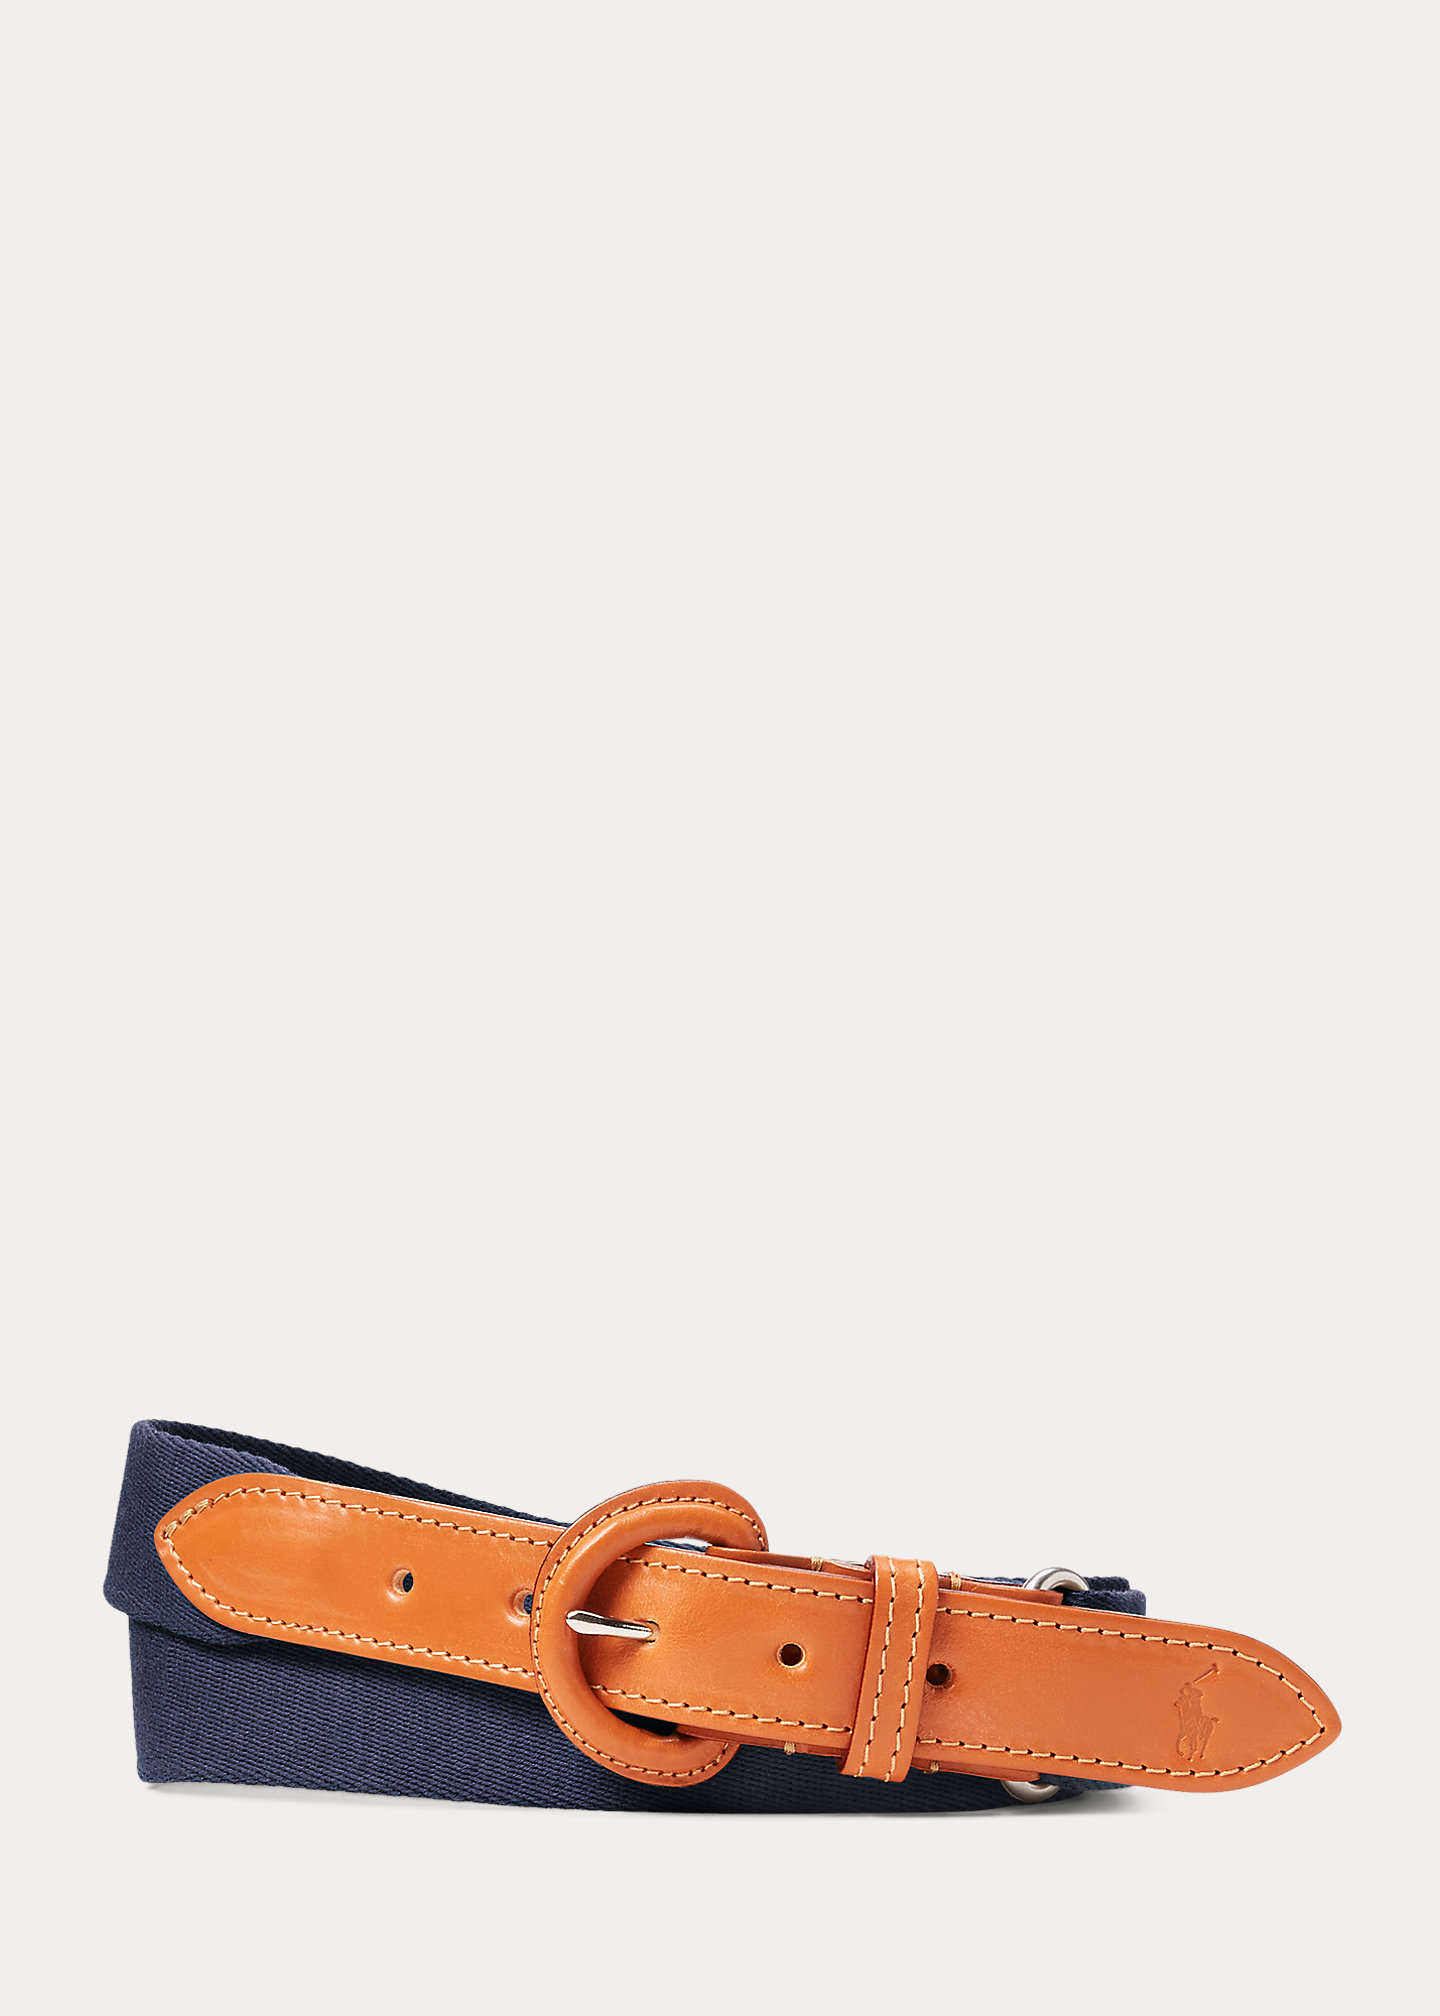 Bridle Leather & Woven Cotton Belt